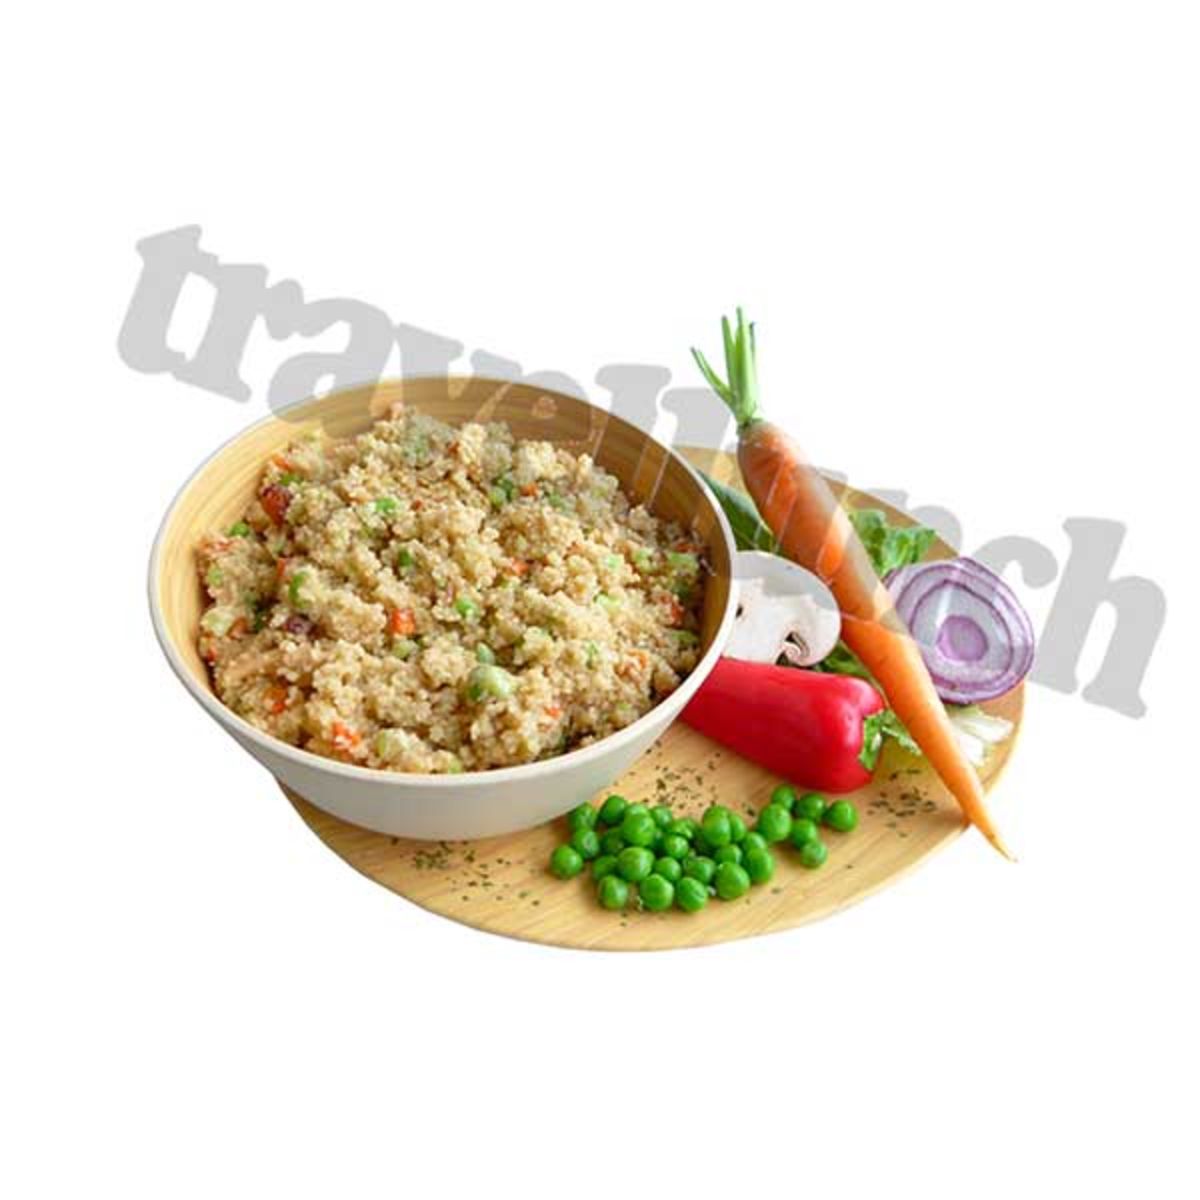 Couscous vegetarian - Double serving